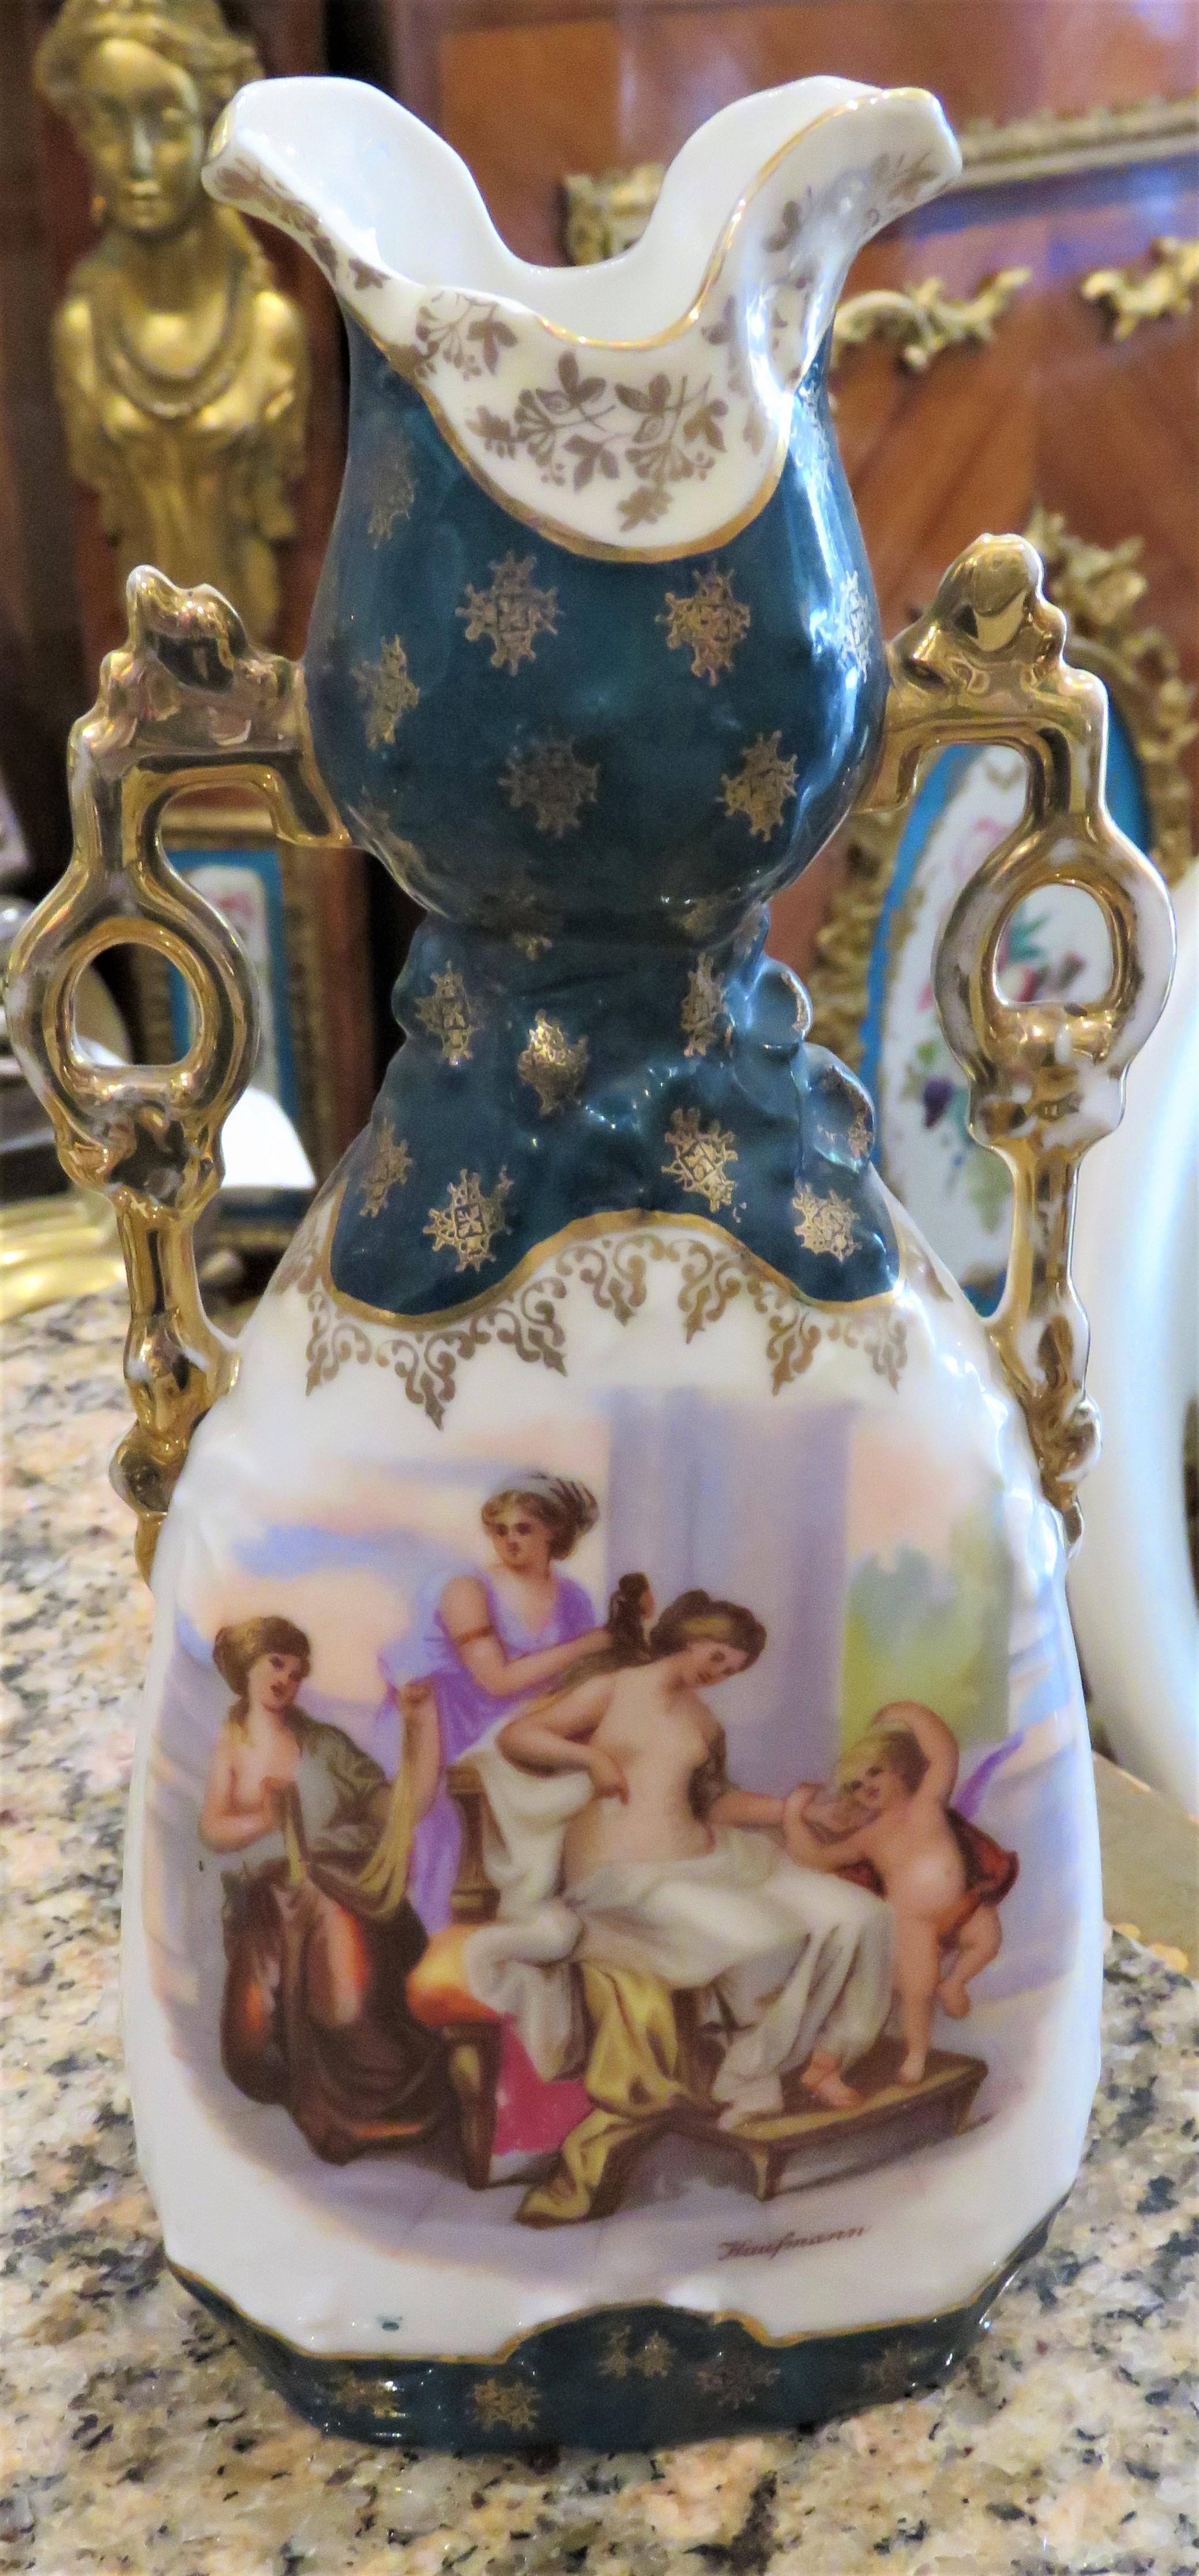 Der folgende Artikel, den wir anbieten, ist eine sehr feine, prächtige königlich-wienerisch-österreichische Kaufmann-Porzellan-Vase. Die Vase zeigt ein Porträt von im Freien sitzenden Jungfrauen mit einem Kind. Feine Details mit Goldakzenten auf